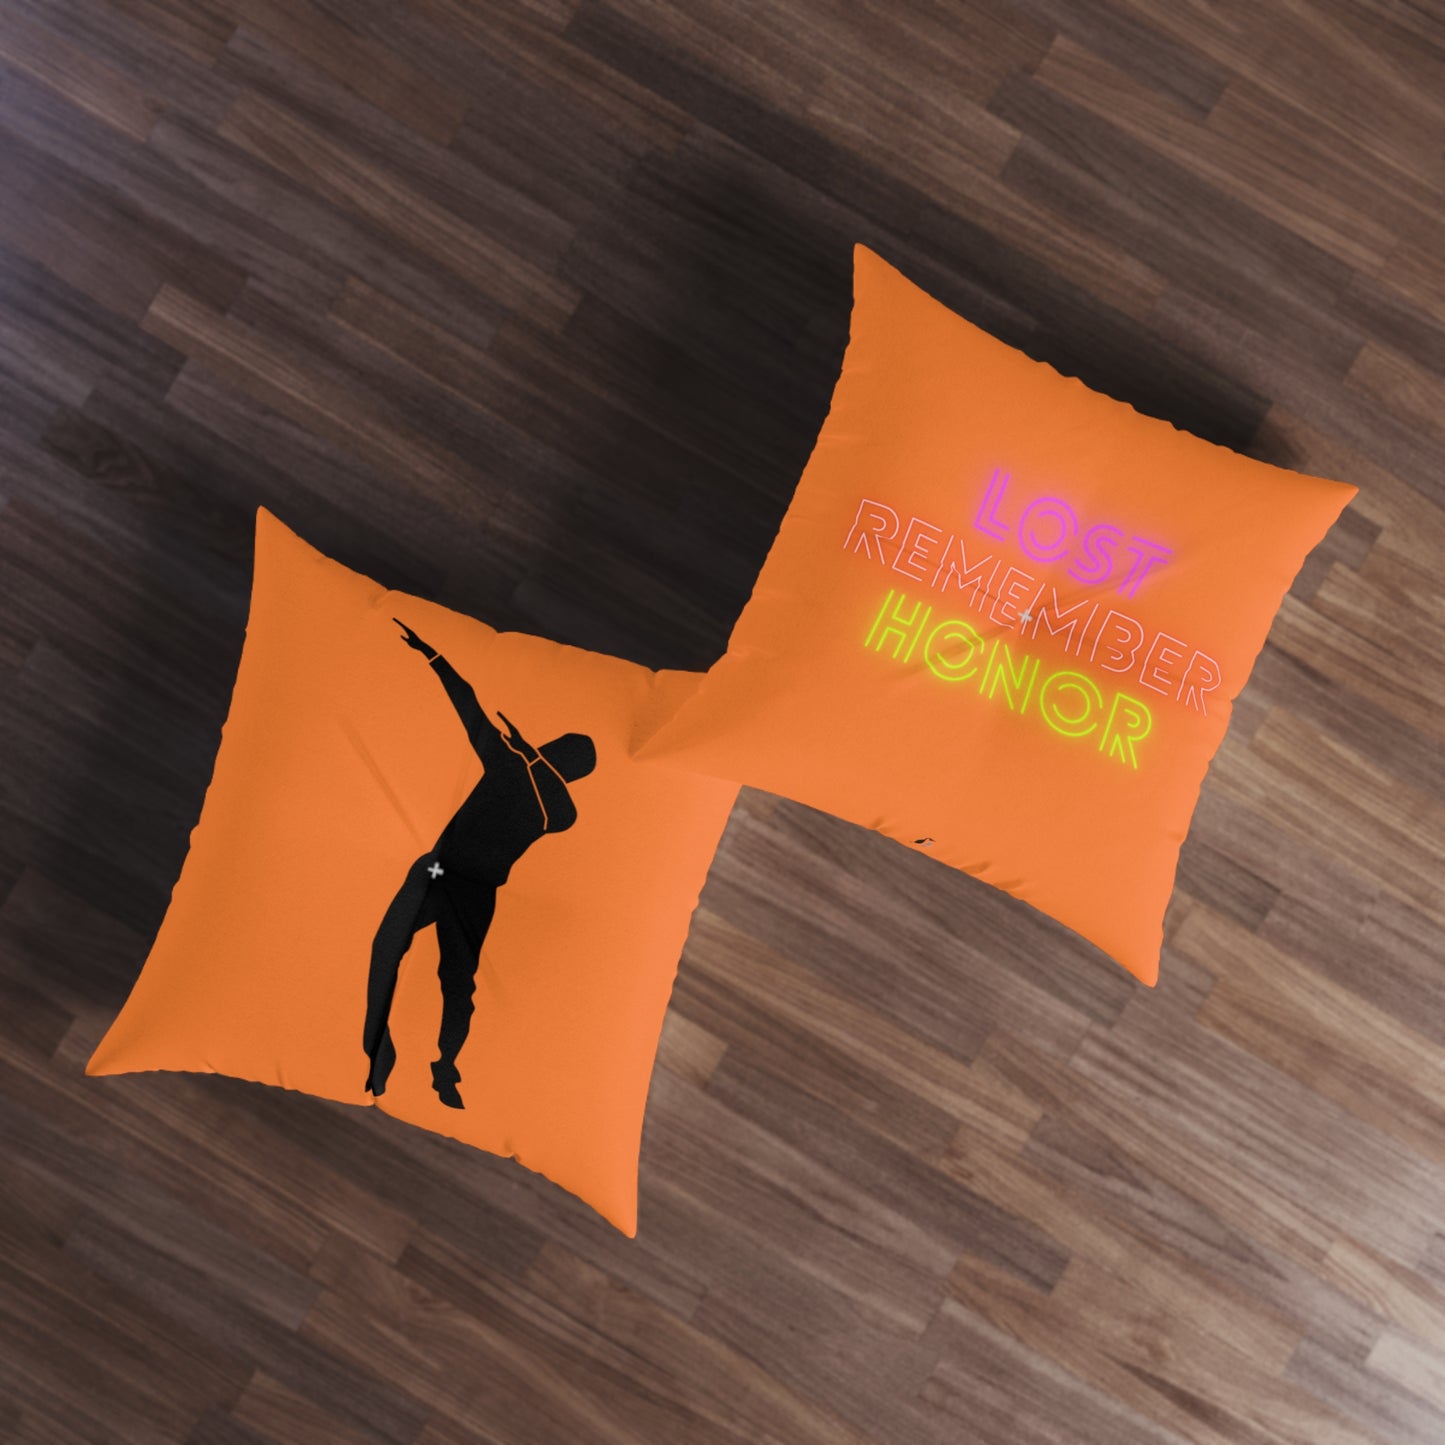 Tufted Floor Pillow, Square: Dance Crusta